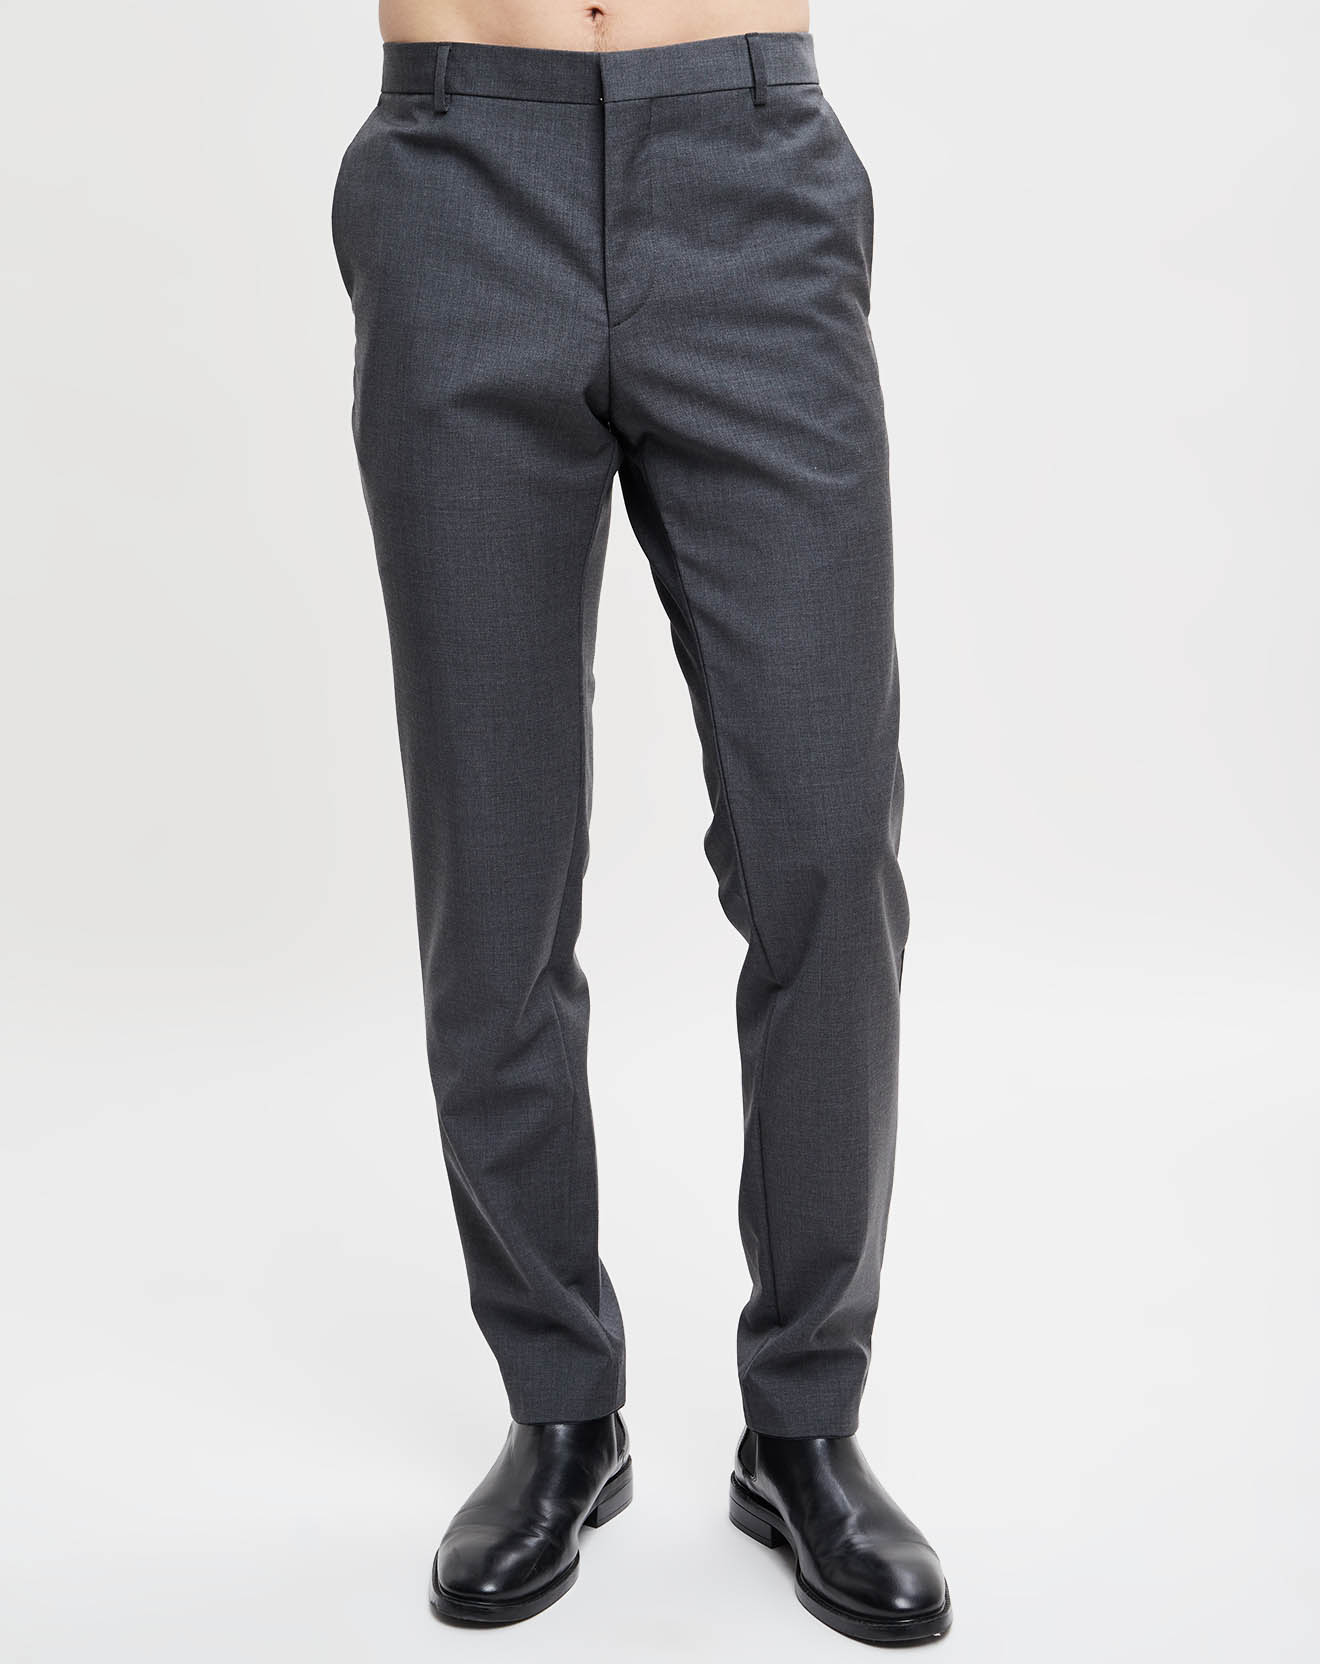 Pantalon 100% Laine fitted Paris-Bm béton